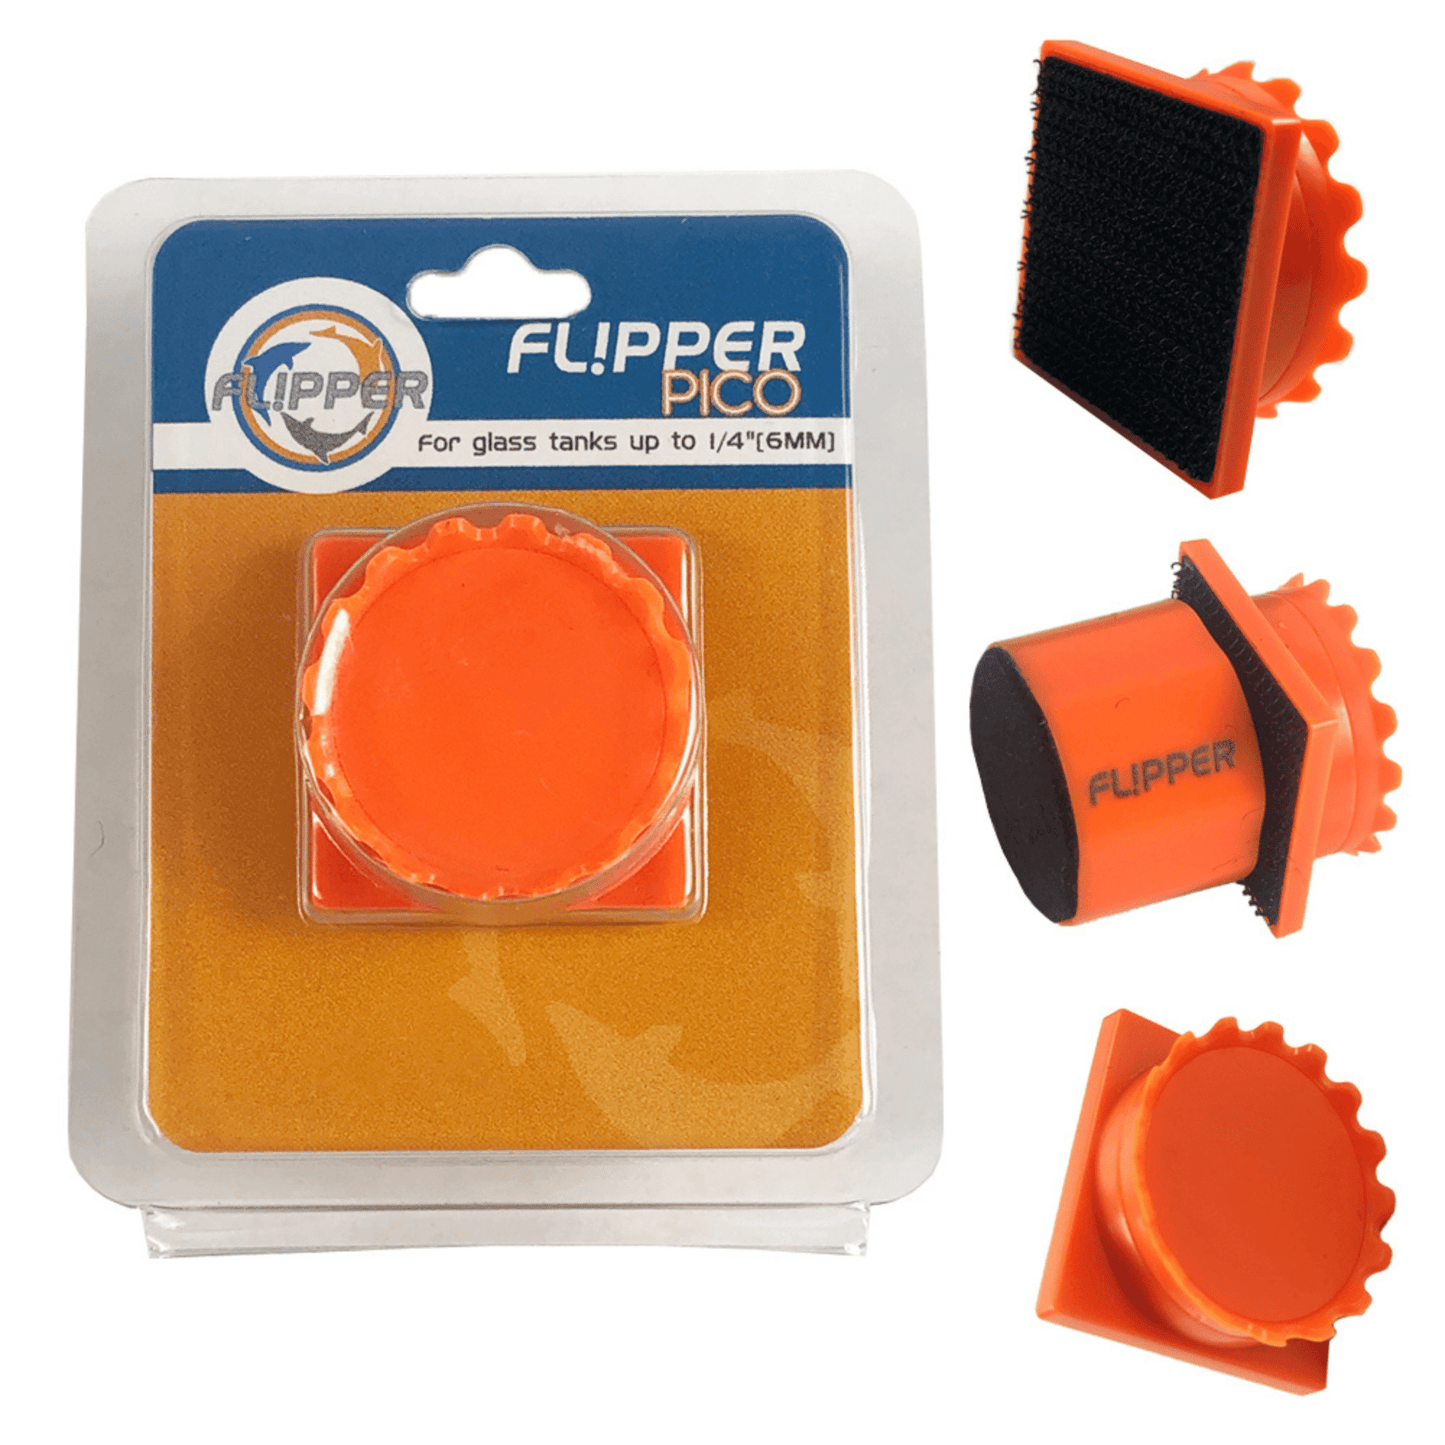 Flipper Cleaner